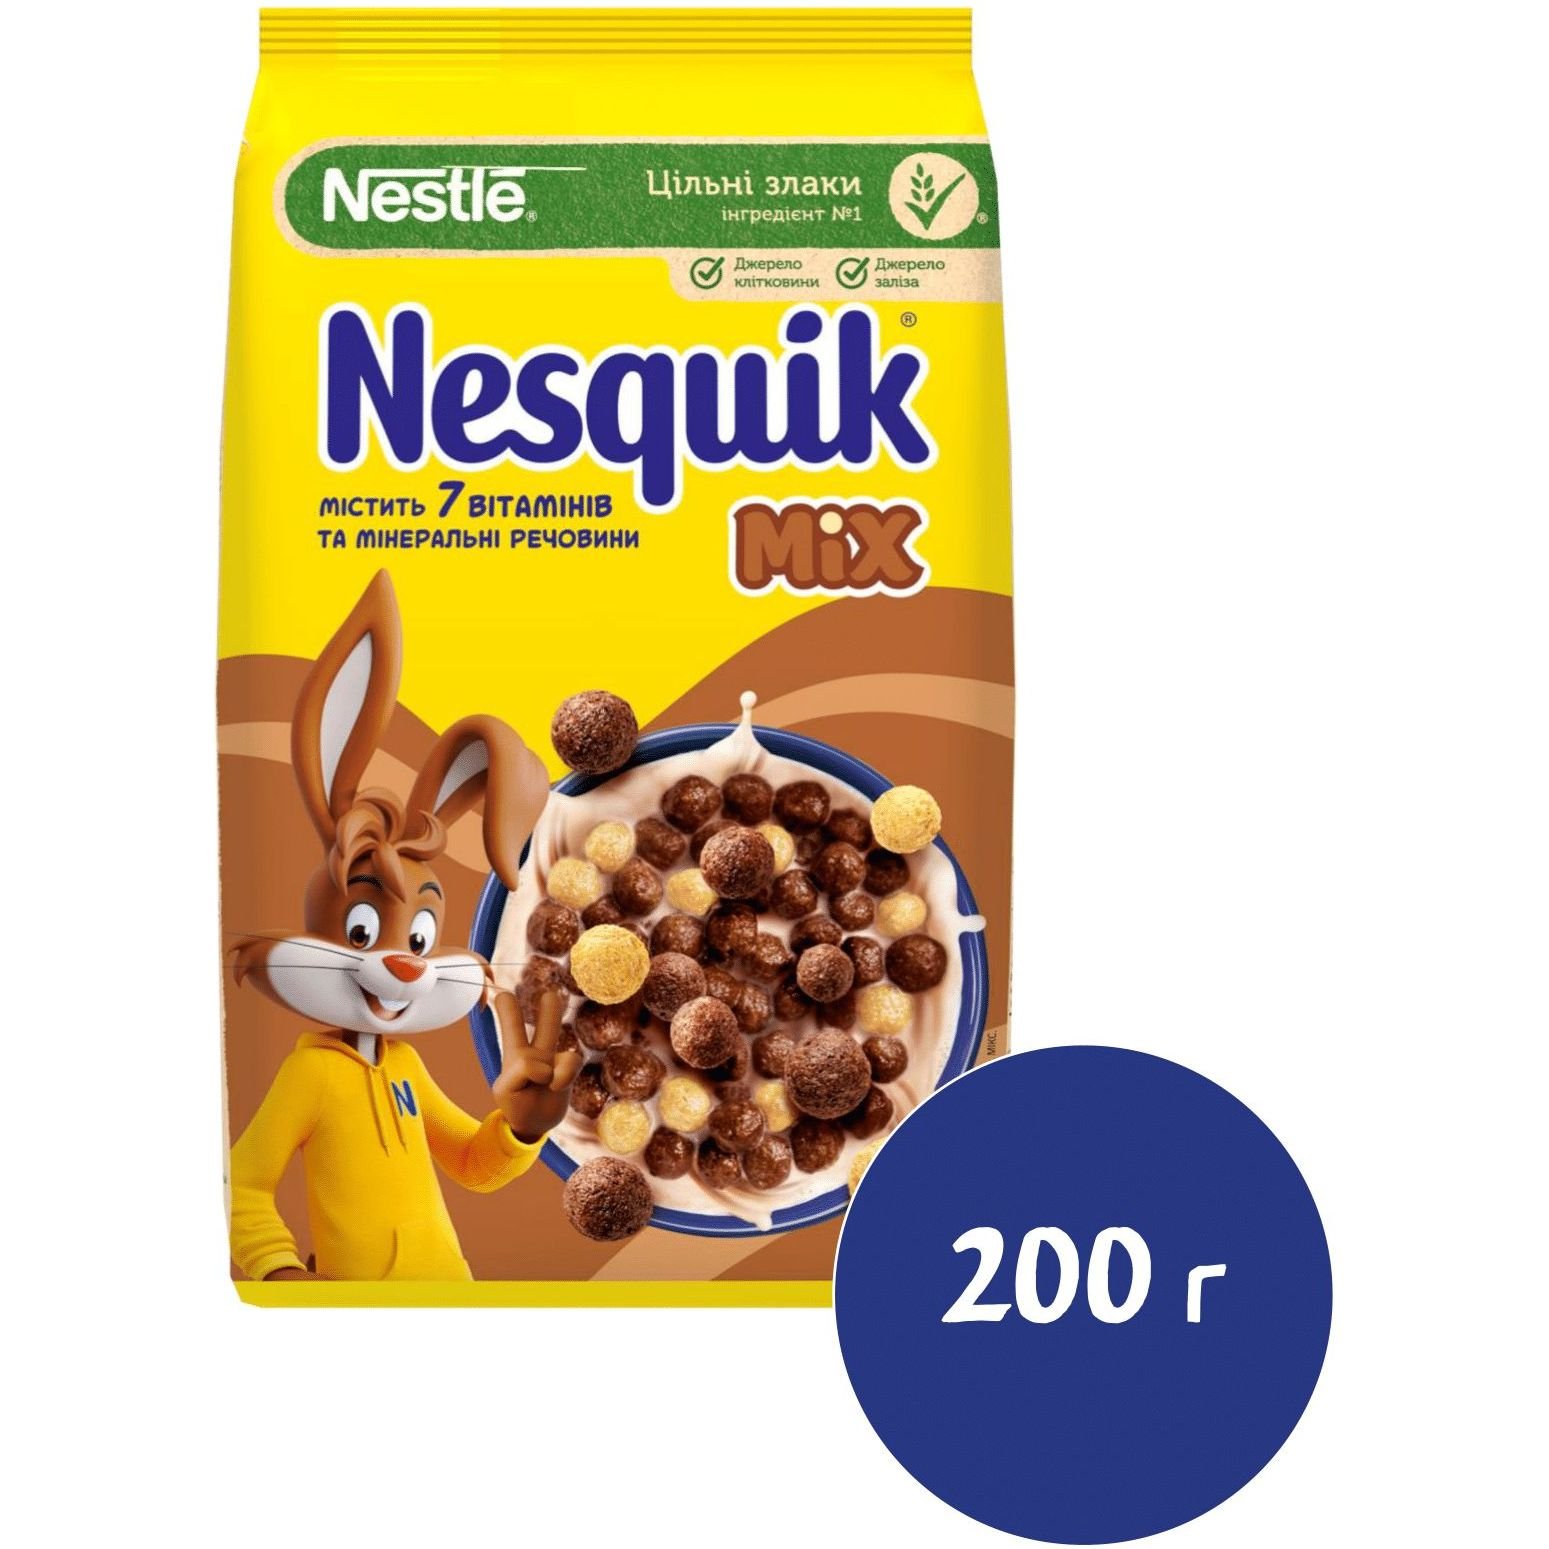 Готовый сухой завтрак Nesquik Mix 200 г - фото 2